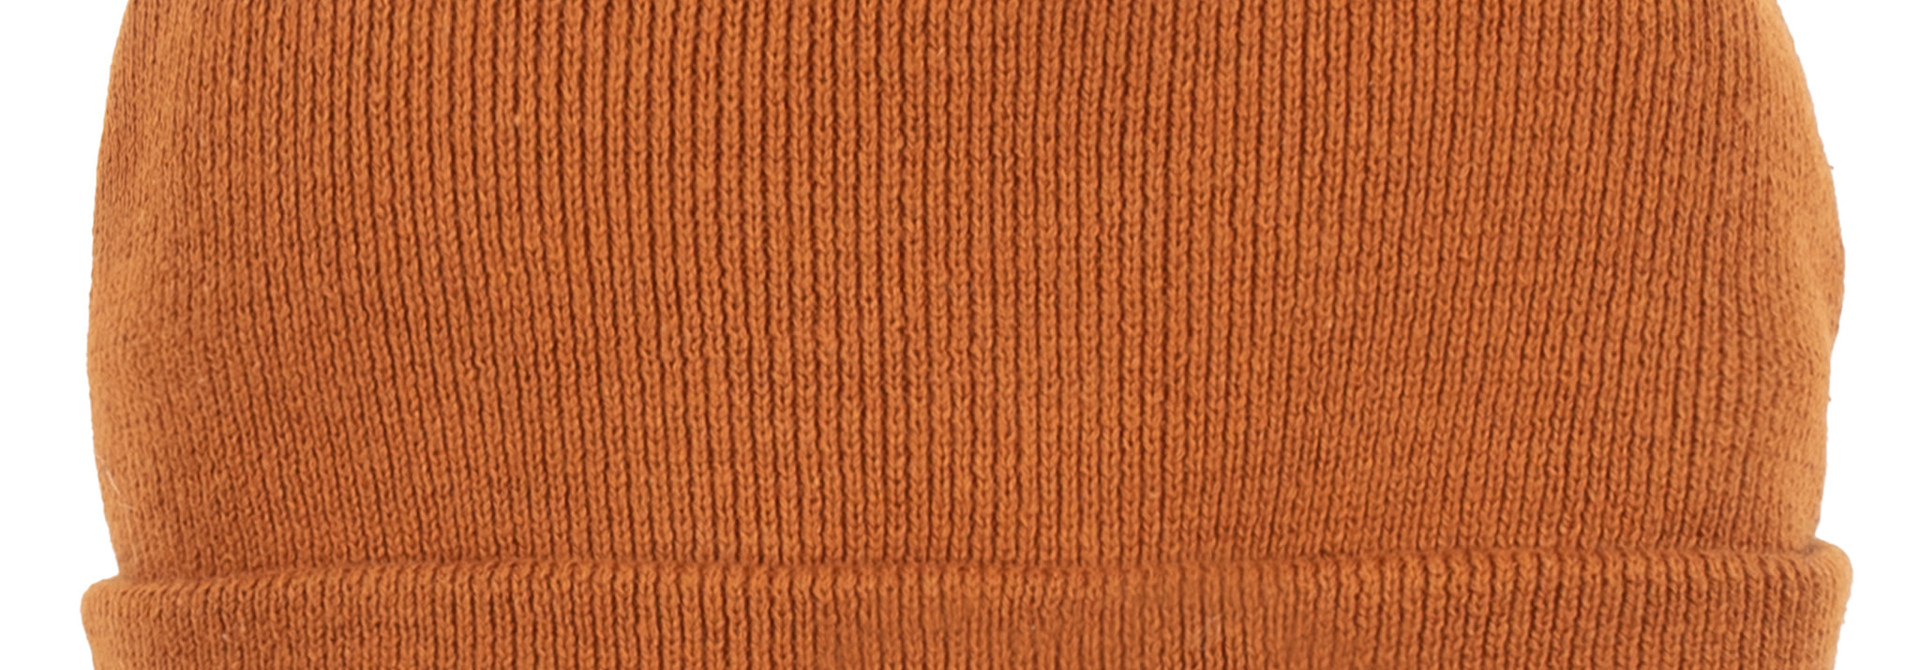 Tuque en tricot - F22 Caramel